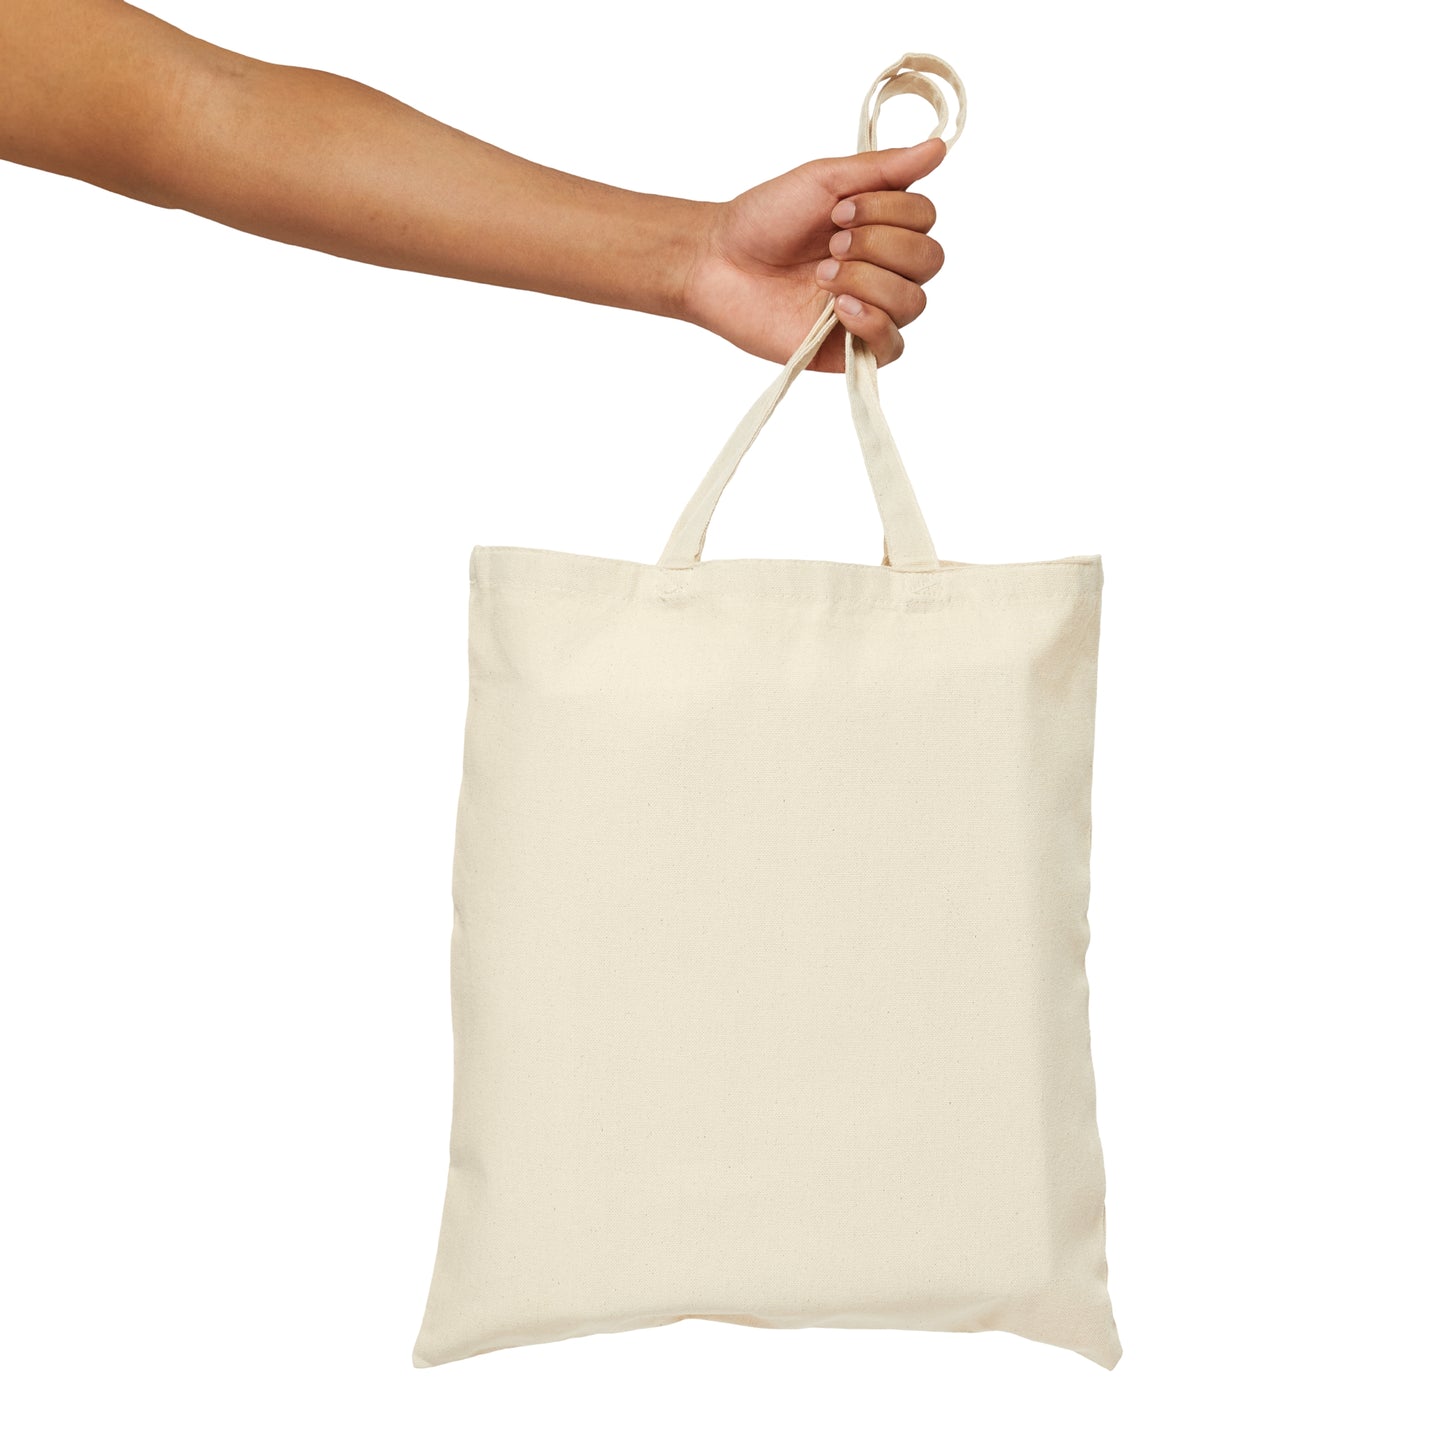 Ho Ho Ho Magic Christmas Gift Canvas Shopping Cotton Tote Bag